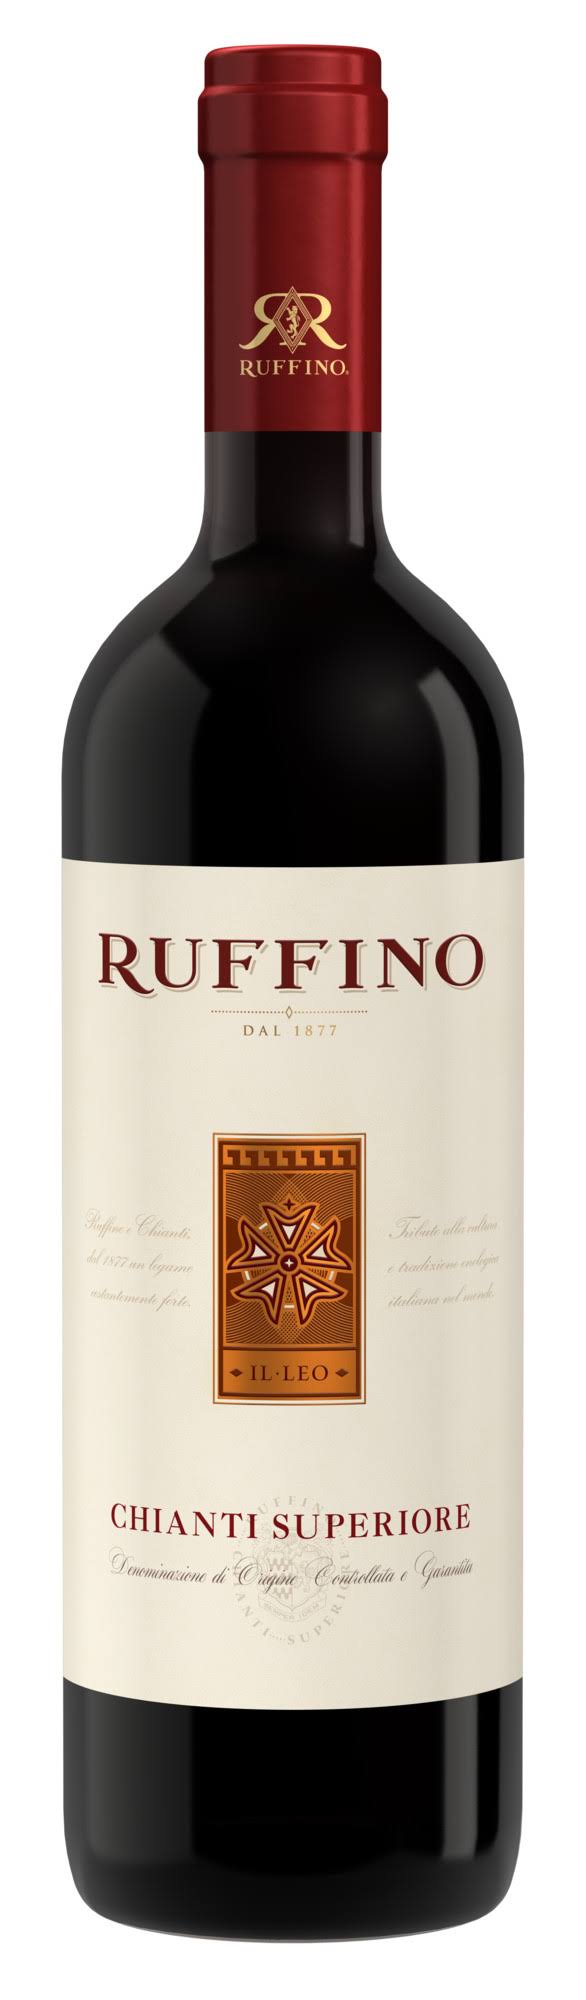 Ruffino Chianti Superiore - 750 ml